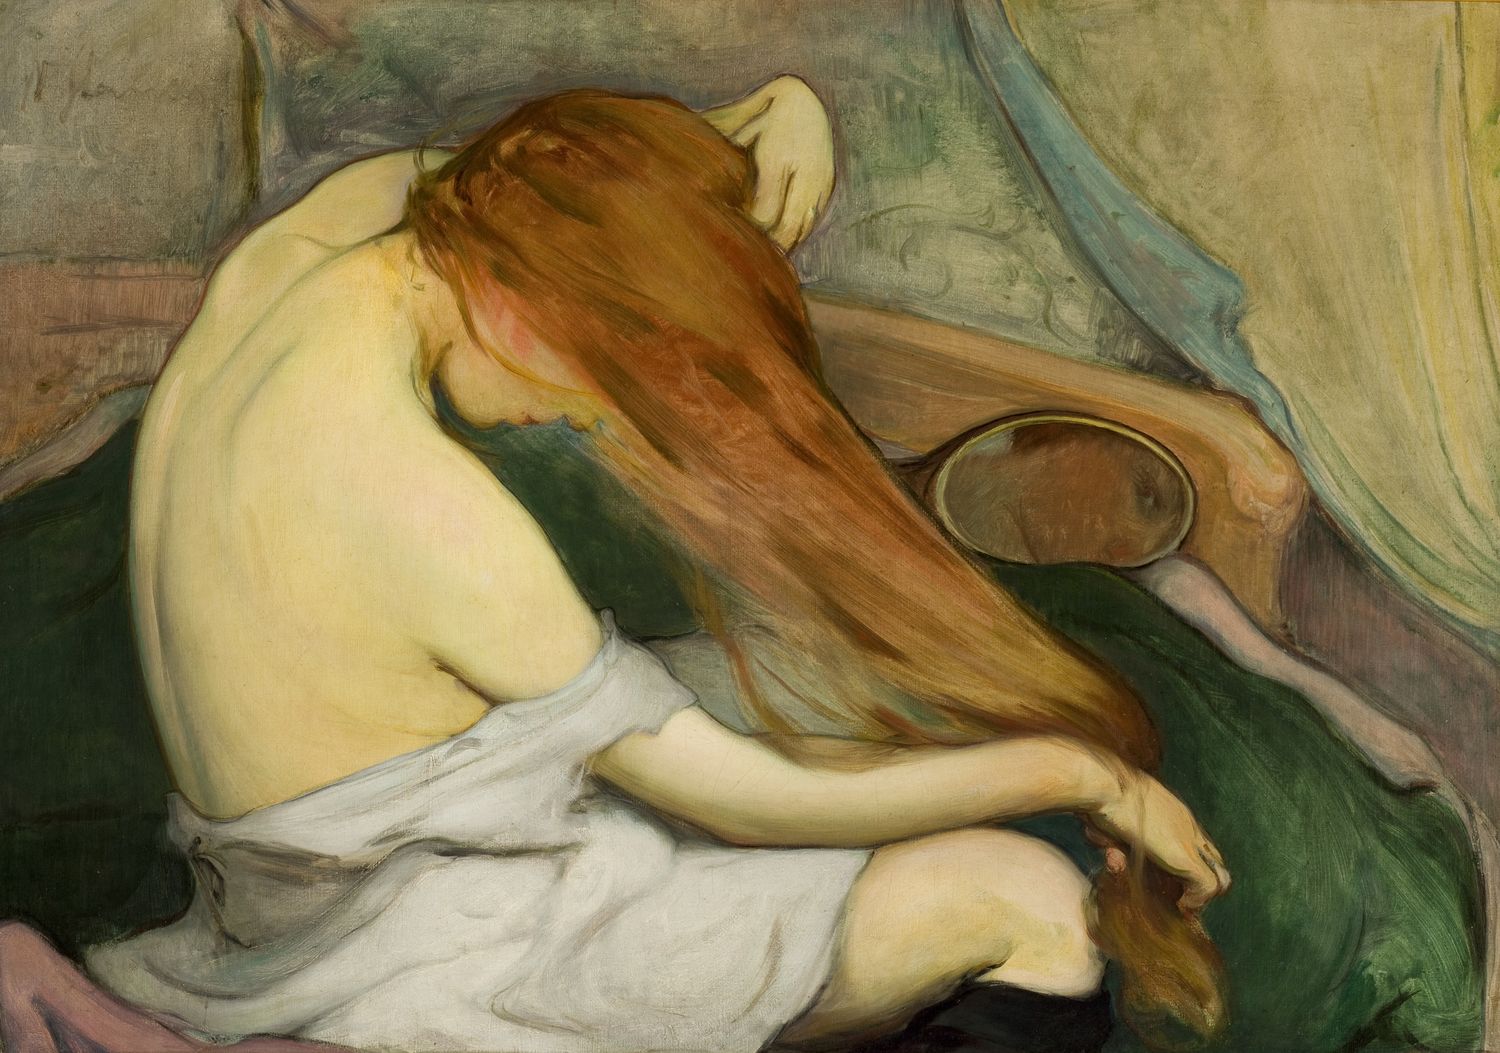 Žena česající si vlasy by Wladyslaw Slewinski - 1897 - 64 cm x 91 cm 